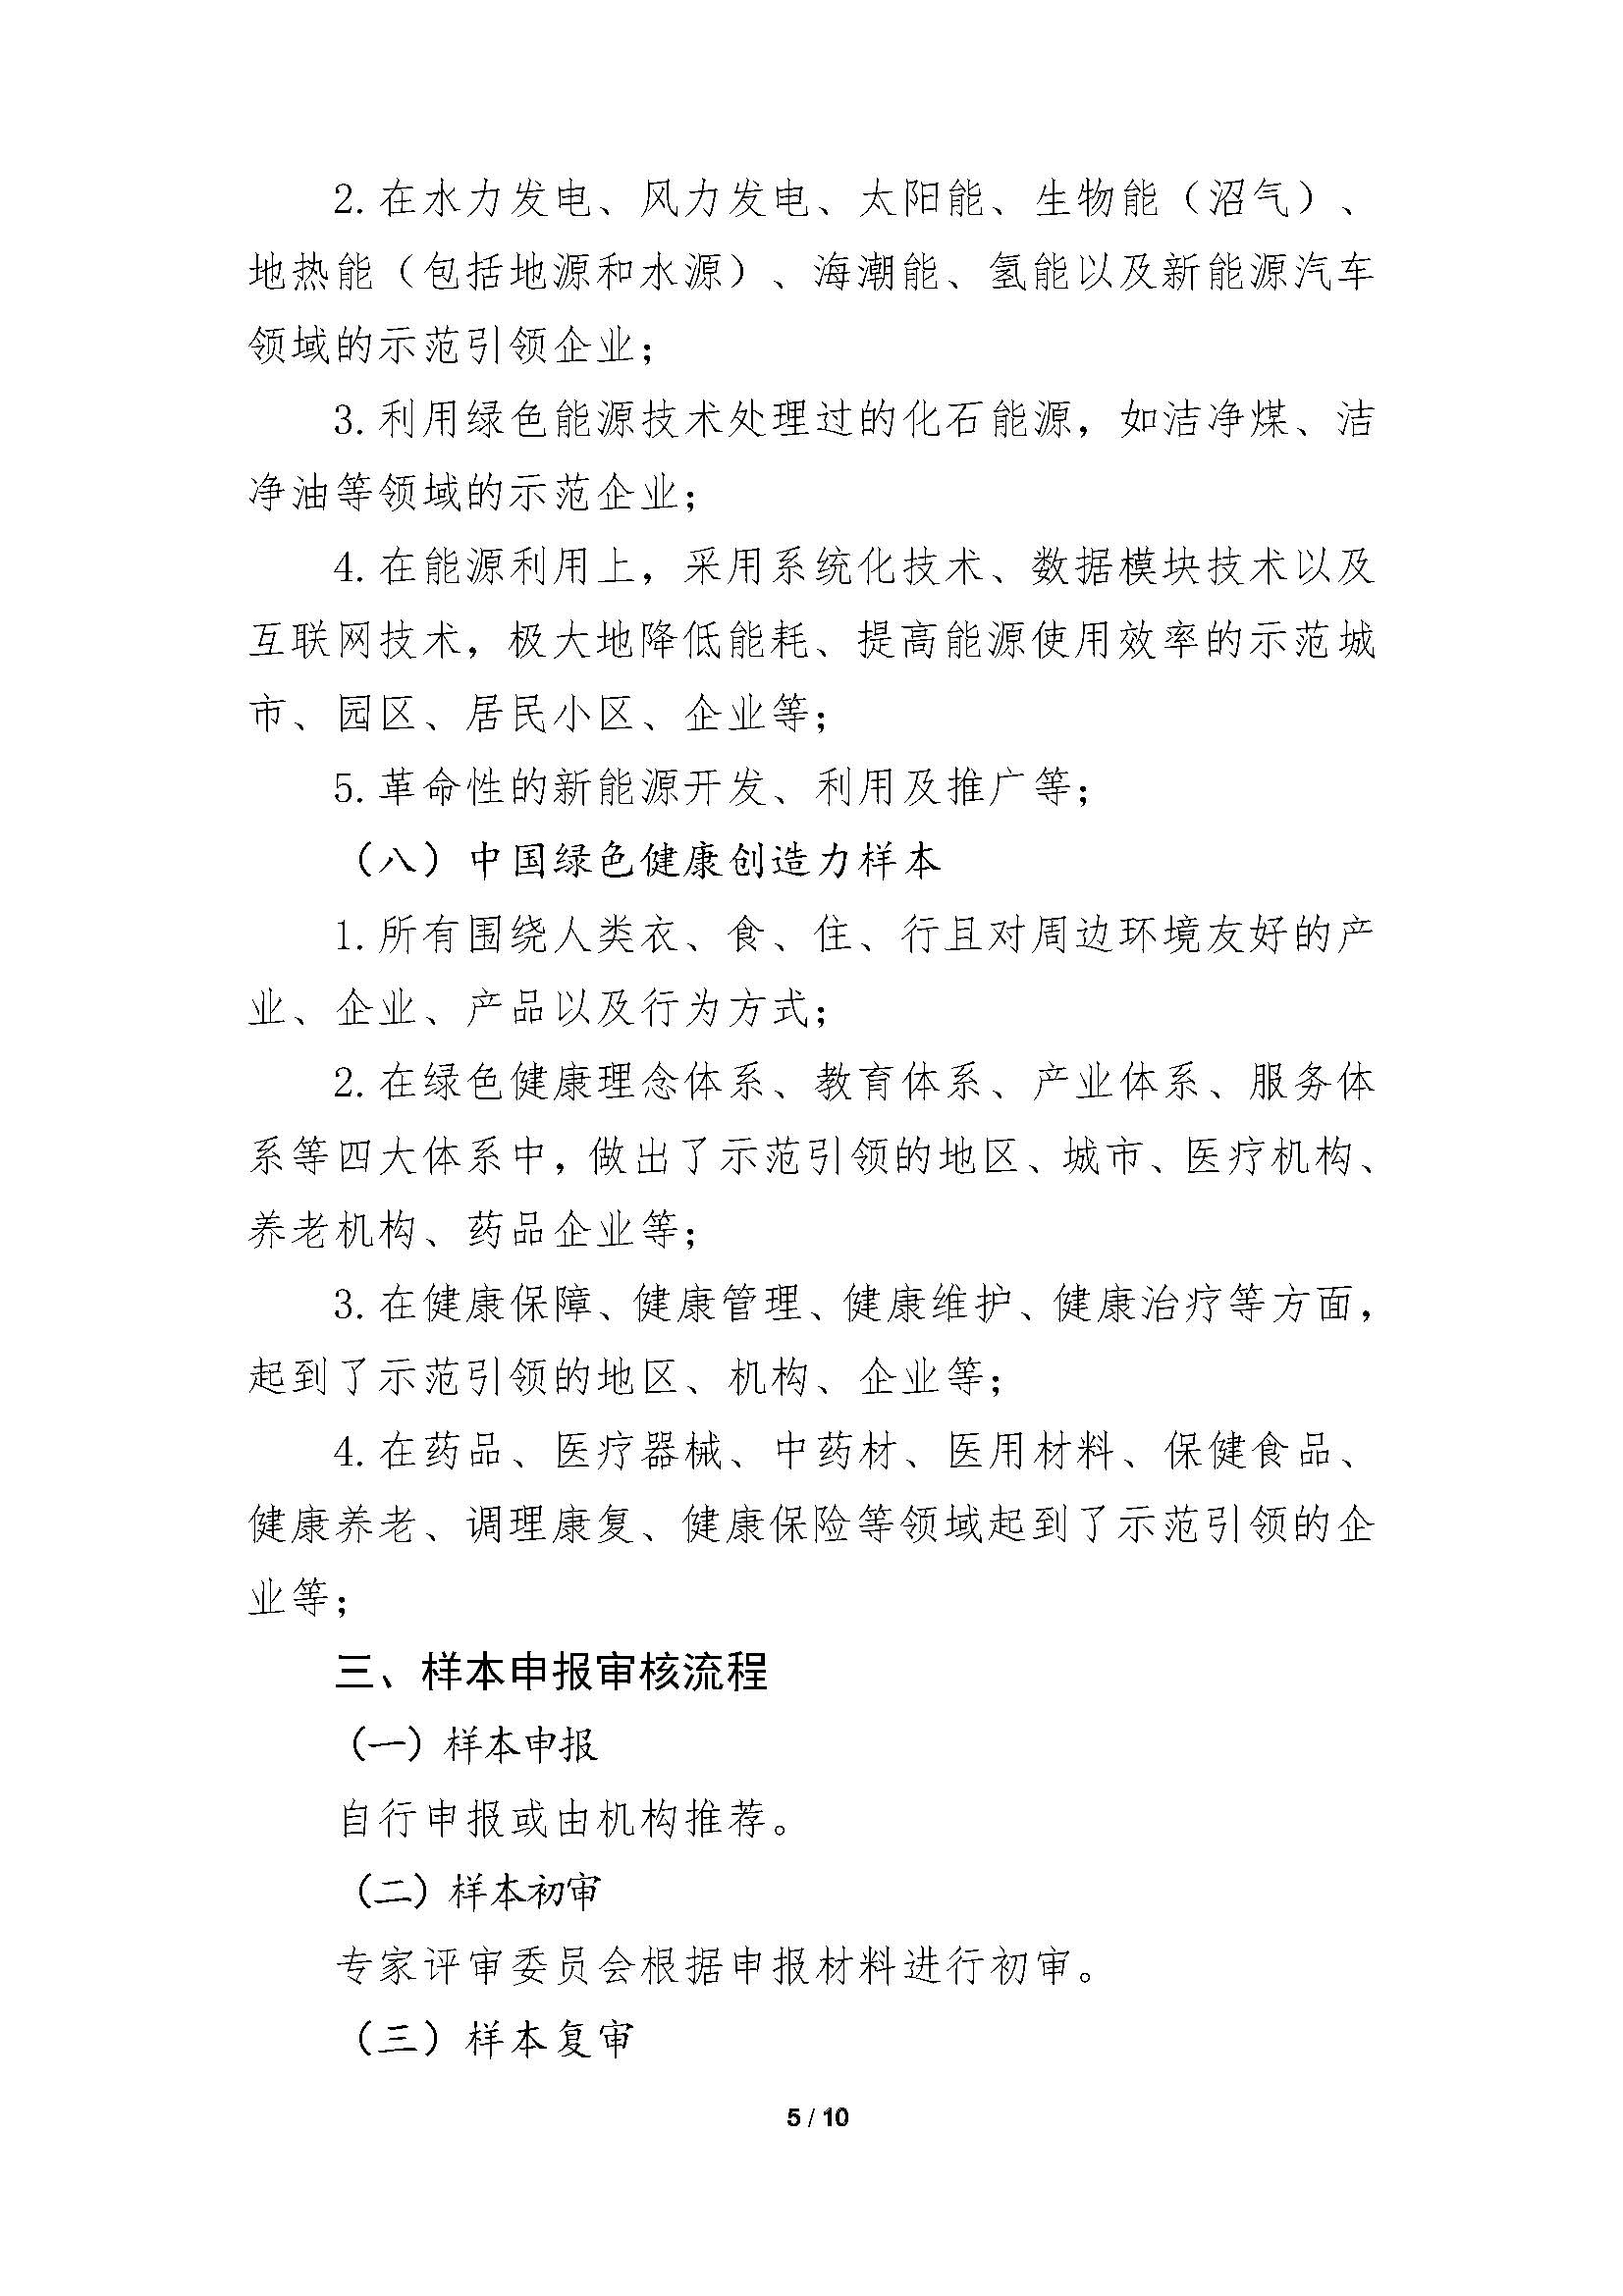 发现中国绿色创造力样本”的通知-刘建忠_页面_05.jpg